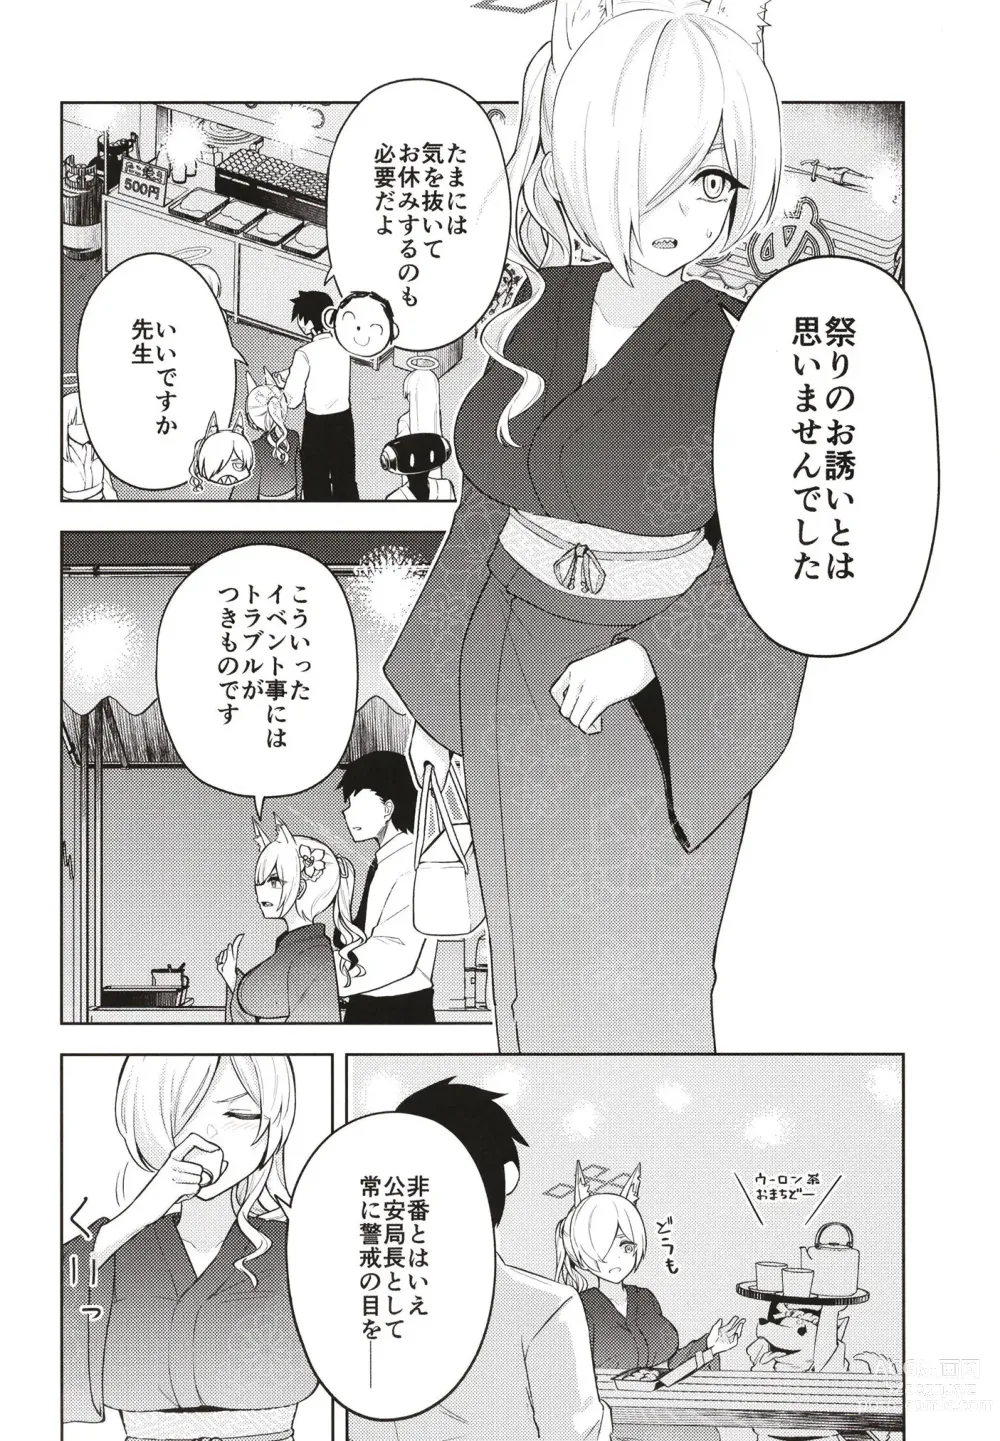 Page 4 of doujinshi Manatsu Hitoyo no Kimi no Kao